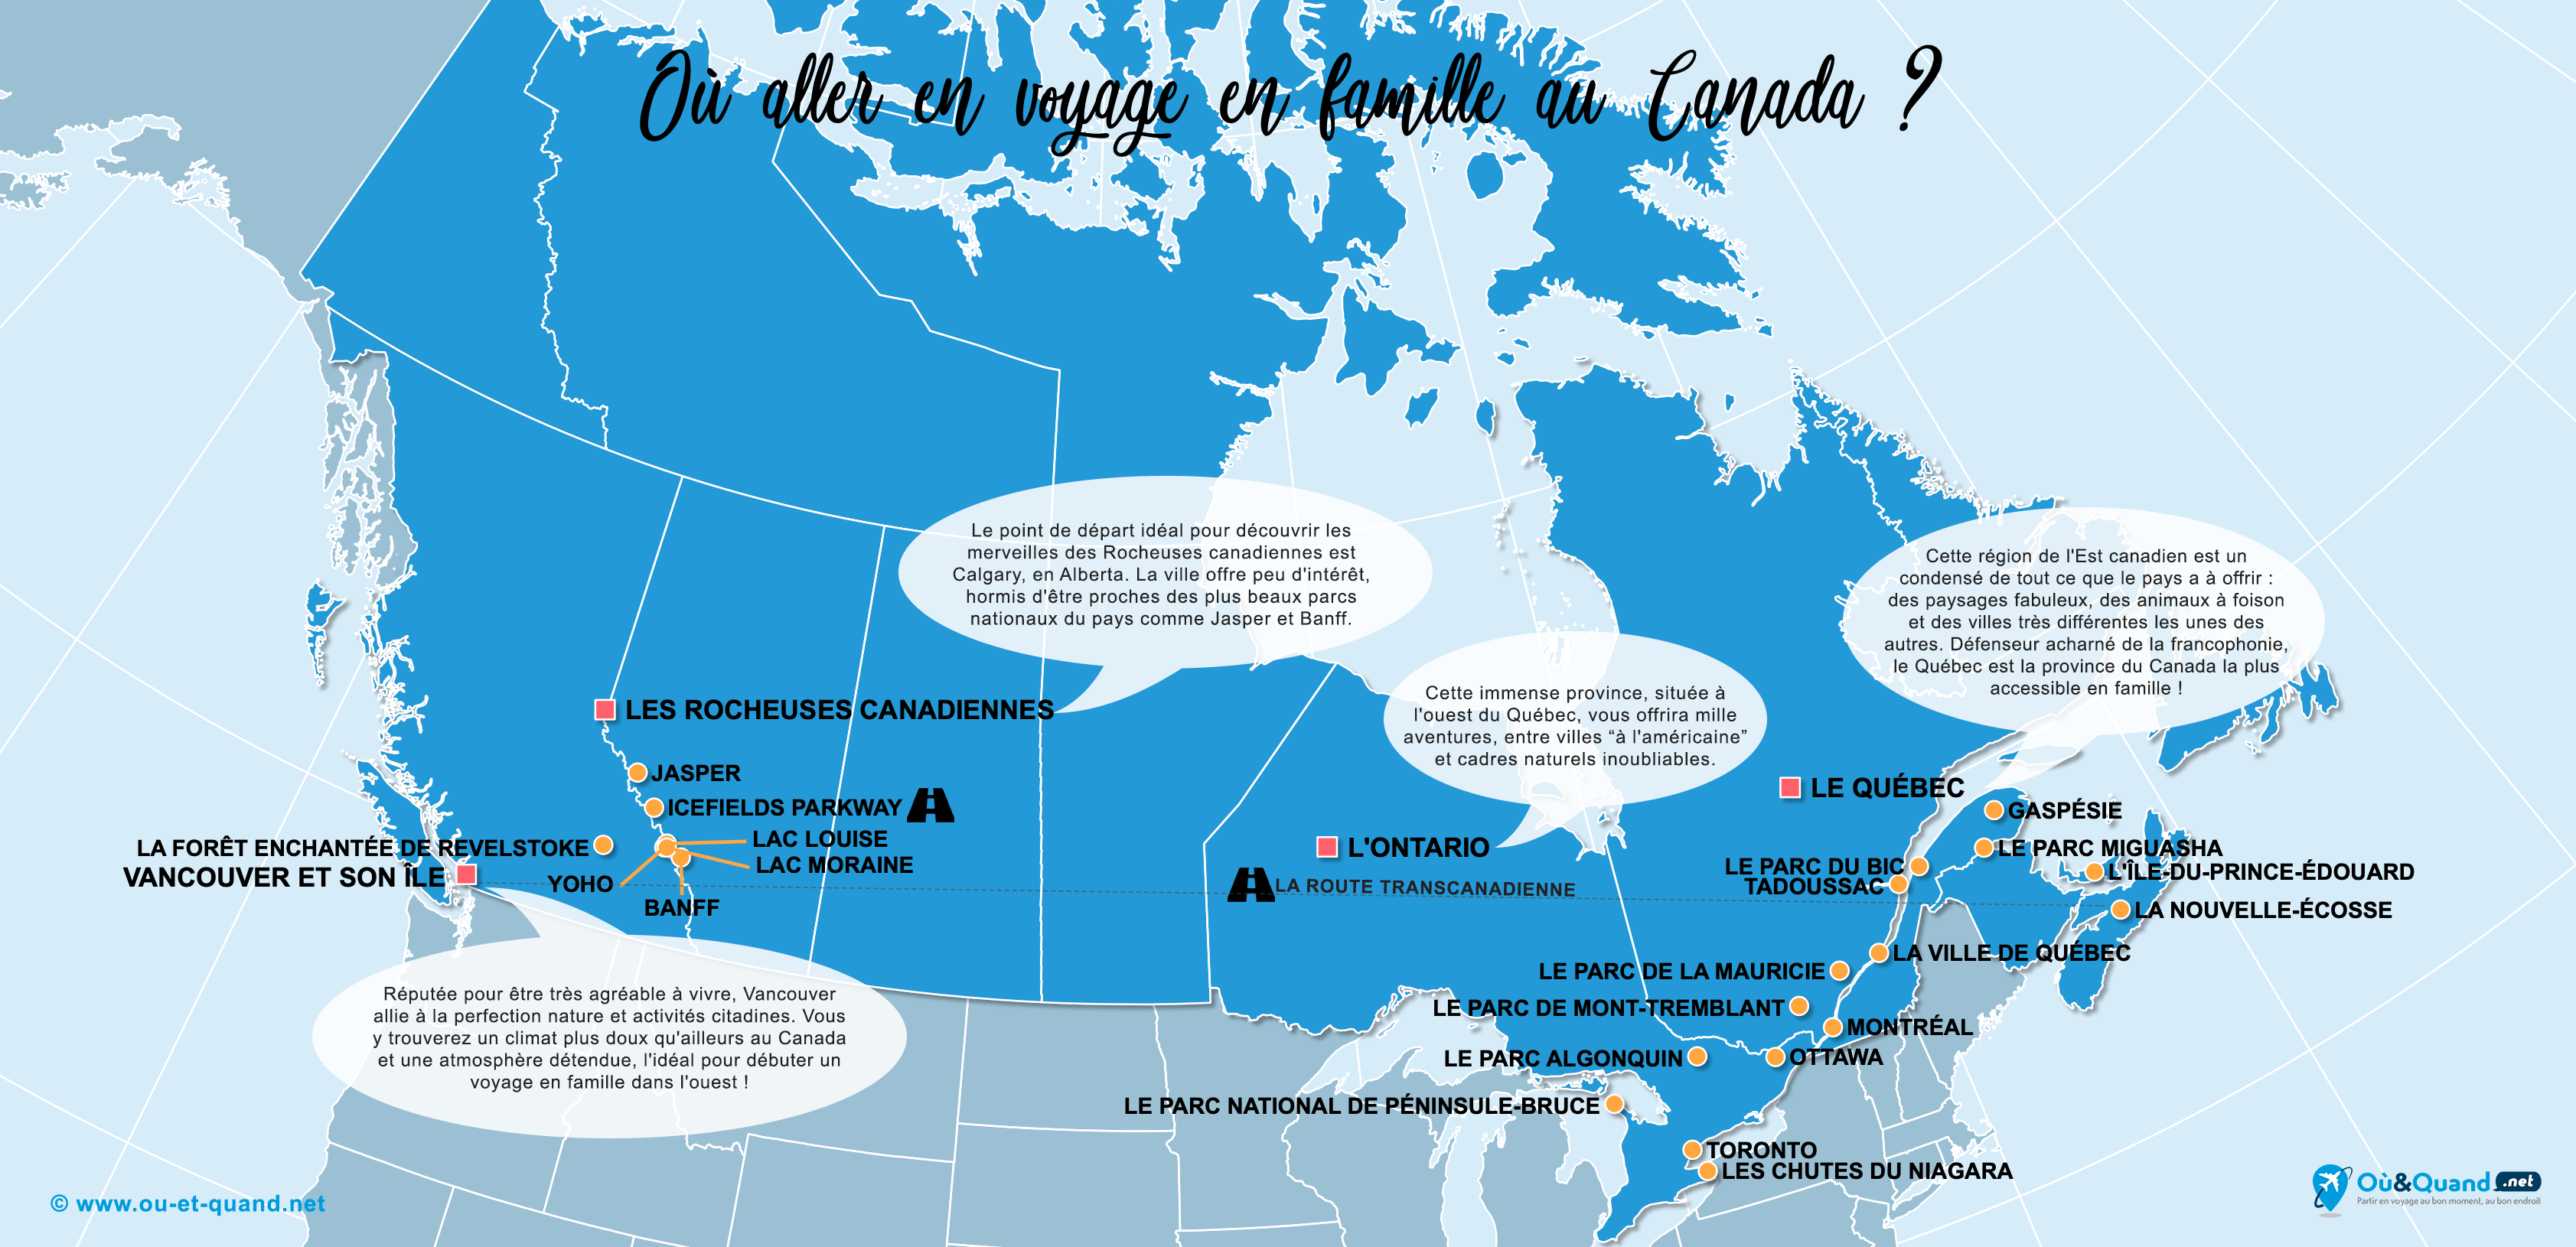 La carte des endroits au Canada où aller en voyage en famille